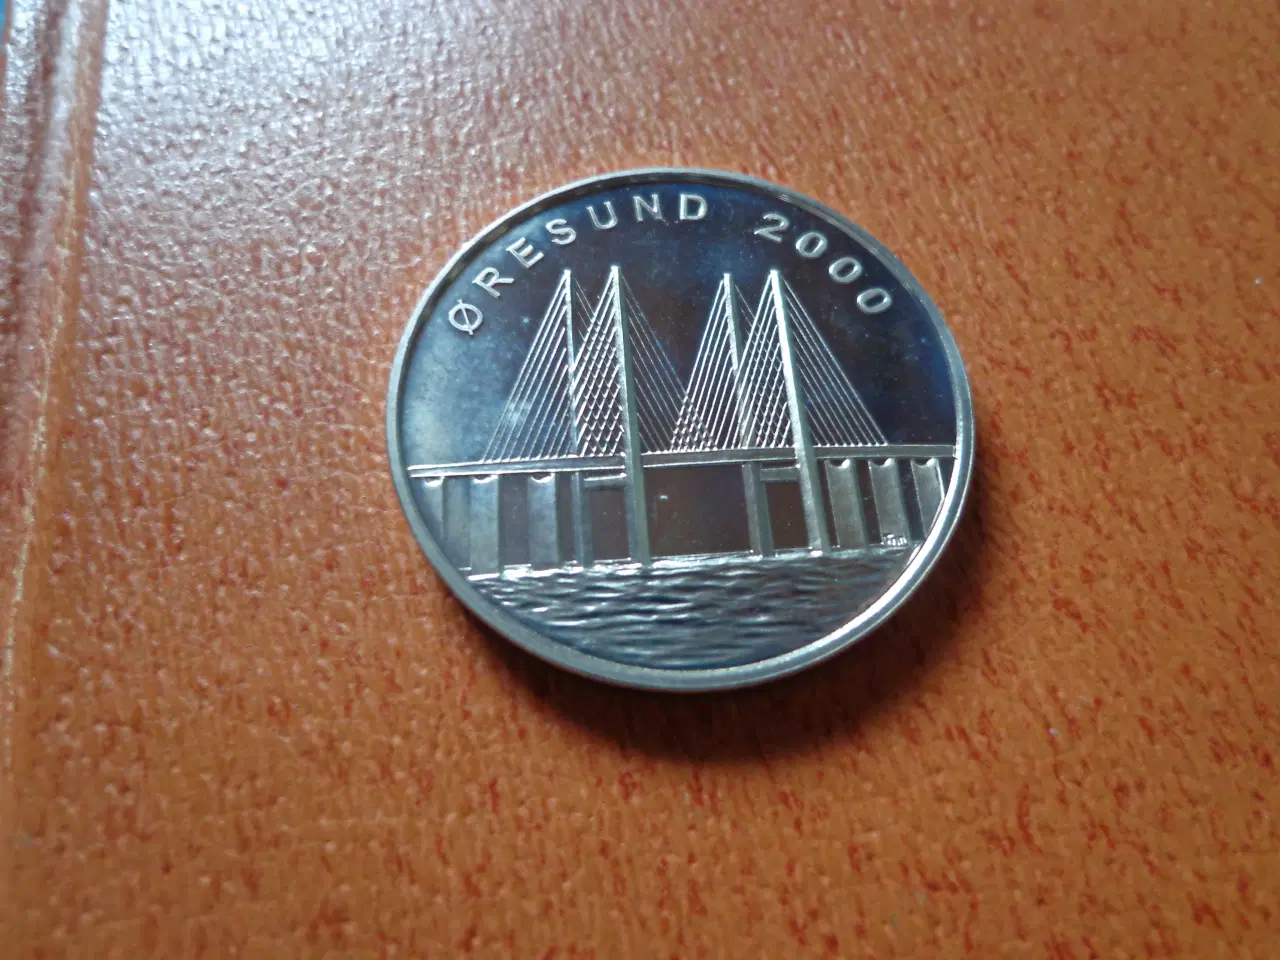 Billede 2 - Øresundsmedaljen fra 2000